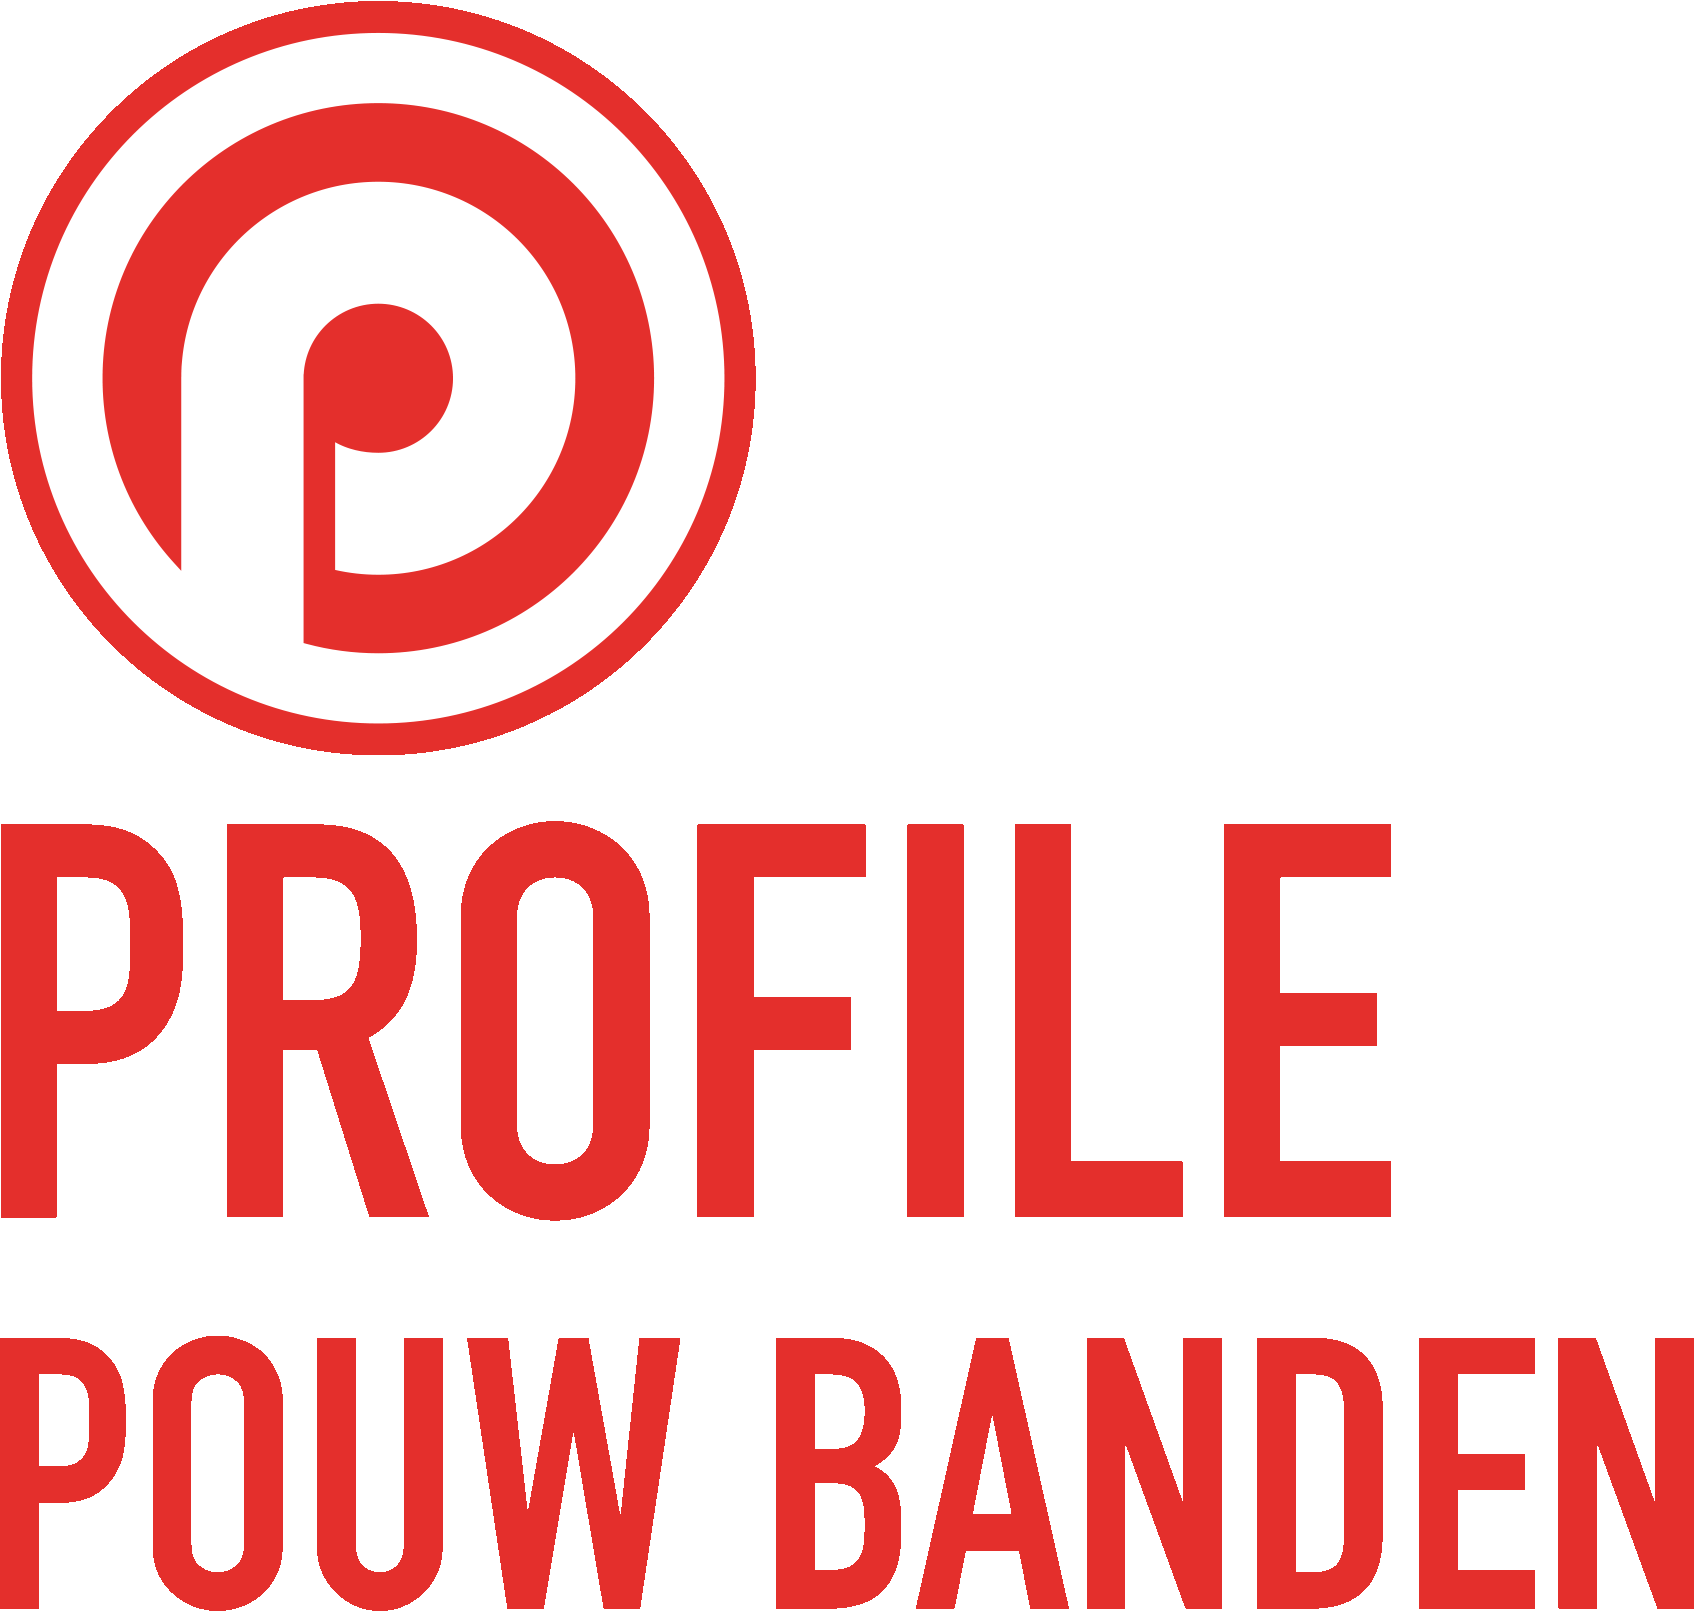 pouwbanden.com logo